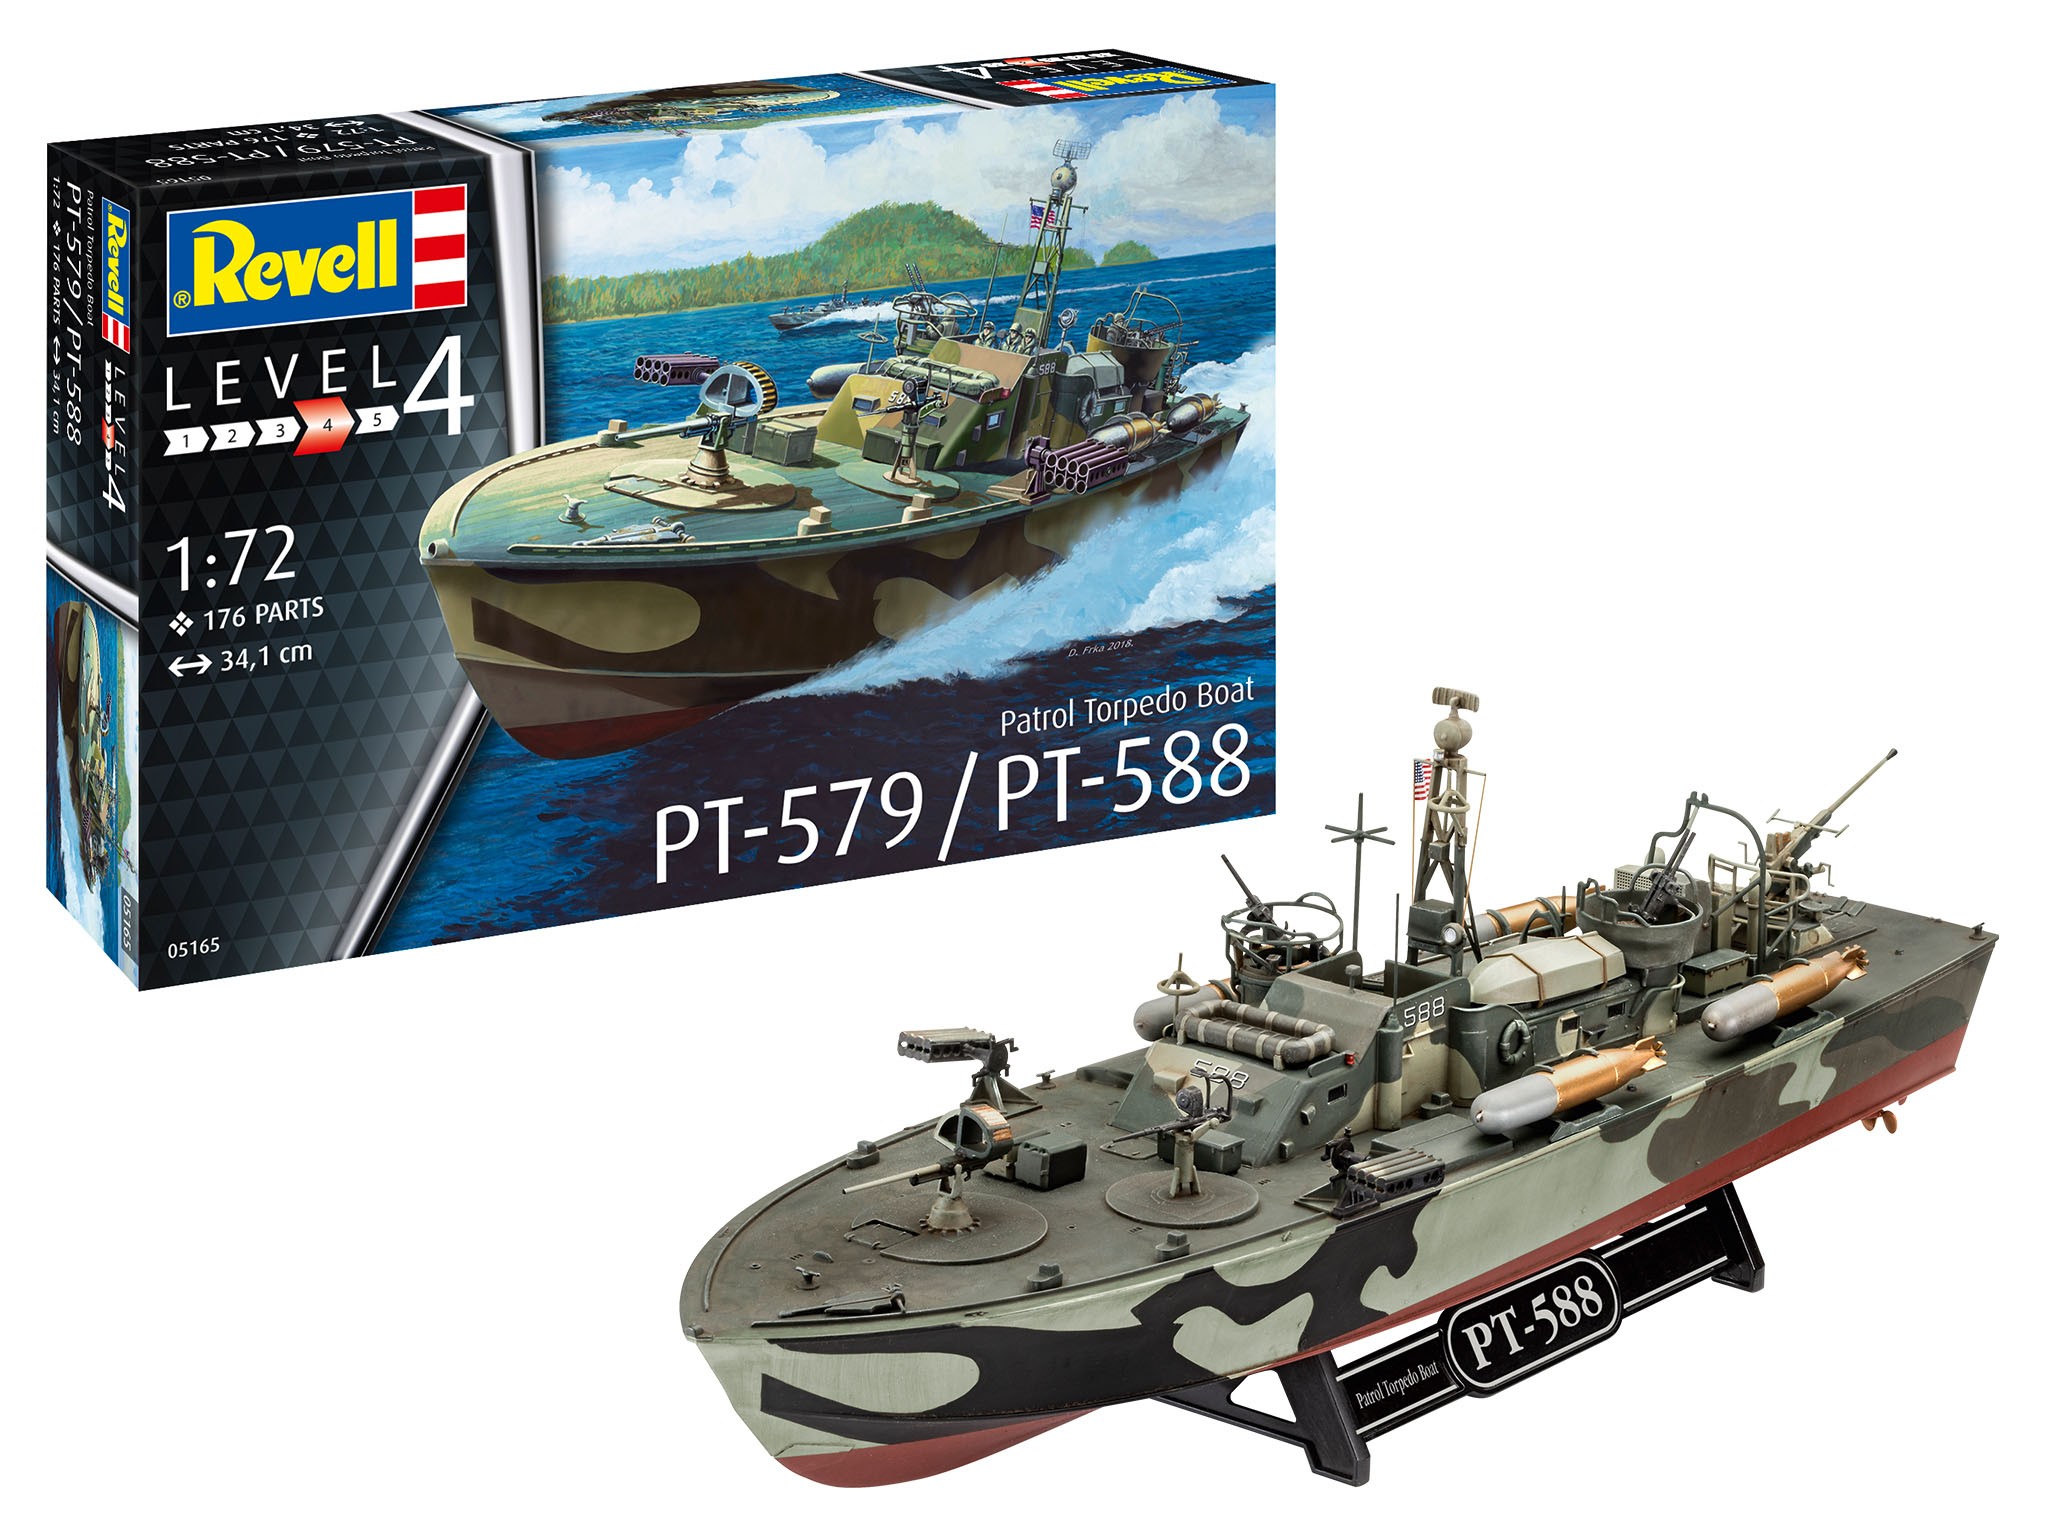 Revell 05165 Patrol Torpedo Boat PT-588/PT-57  1:72